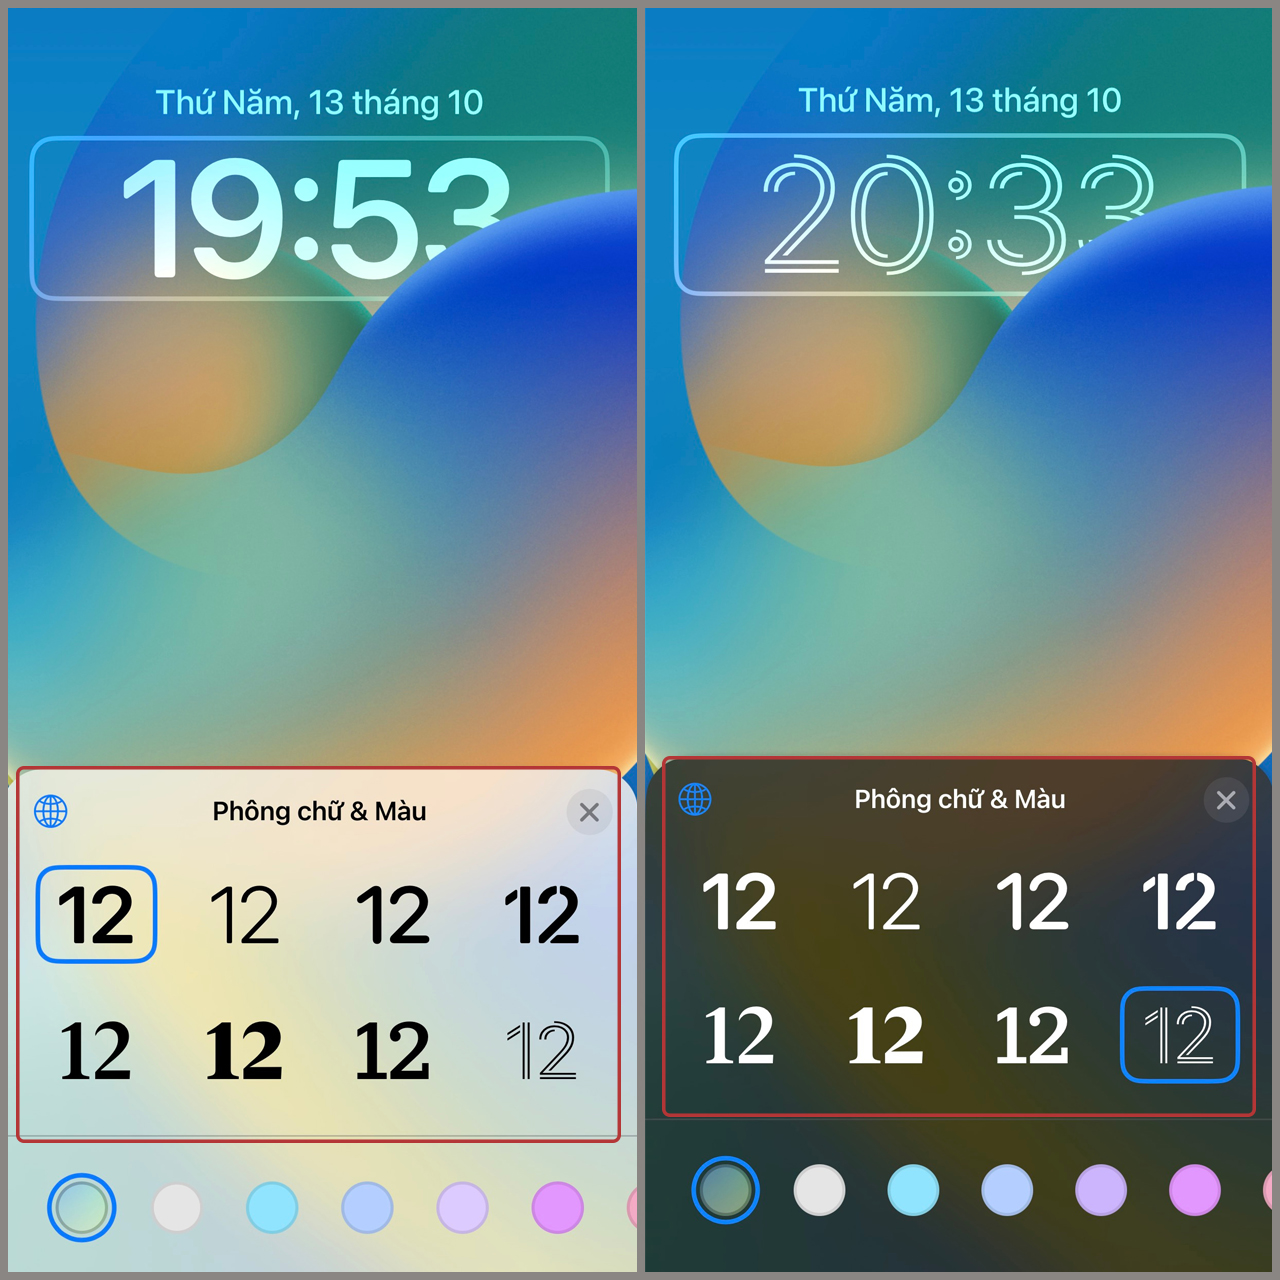 Đồng hồ trên iOS 16 được cải tiến để đáp ứng nhu cầu ngày càng cao của người dùng. Ngoài việc cung cấp thông tin chính xác về thời gian, nó còn tùy chỉnh giao diện và tích hợp nhiều tính năng thông minh khác giúp bạn sắp xếp công việc một cách hiệu quả hơn. Tải ngay iOS 16 để trải nghiệm sự cải tiến này.